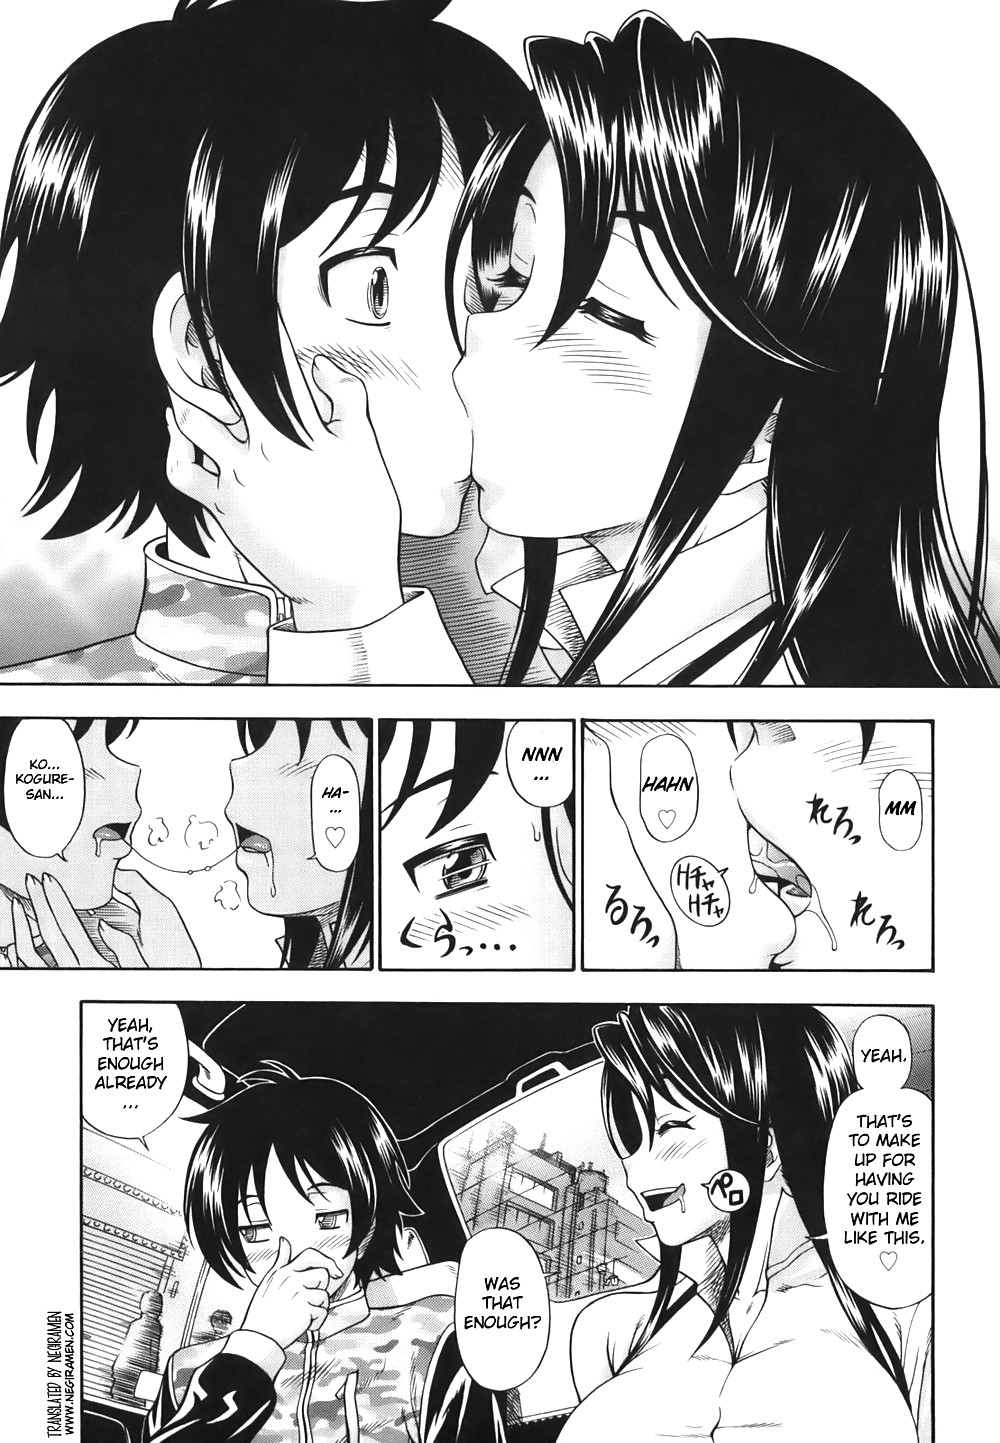 (fumetto hentai) fukudada opere erotiche #1
 #21011392